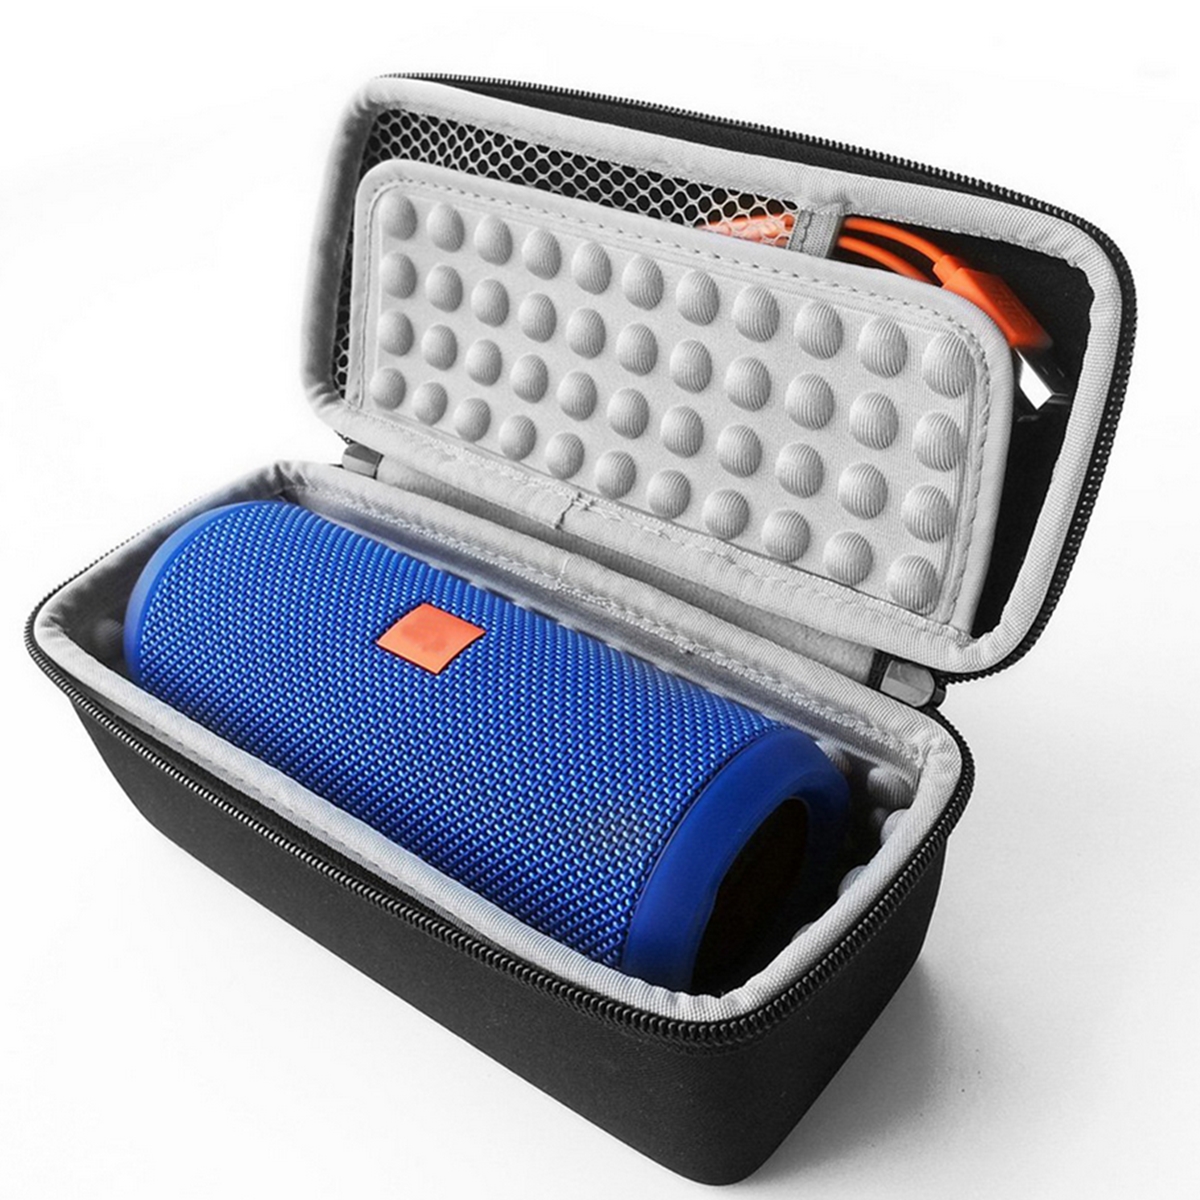 Portable-EVA-Storage-Bag-Shockproof-Hard-Case-Zipper-Cover-for-JBL-Flip-1-2-3-4-bluetooth-Speaker-1232770-4